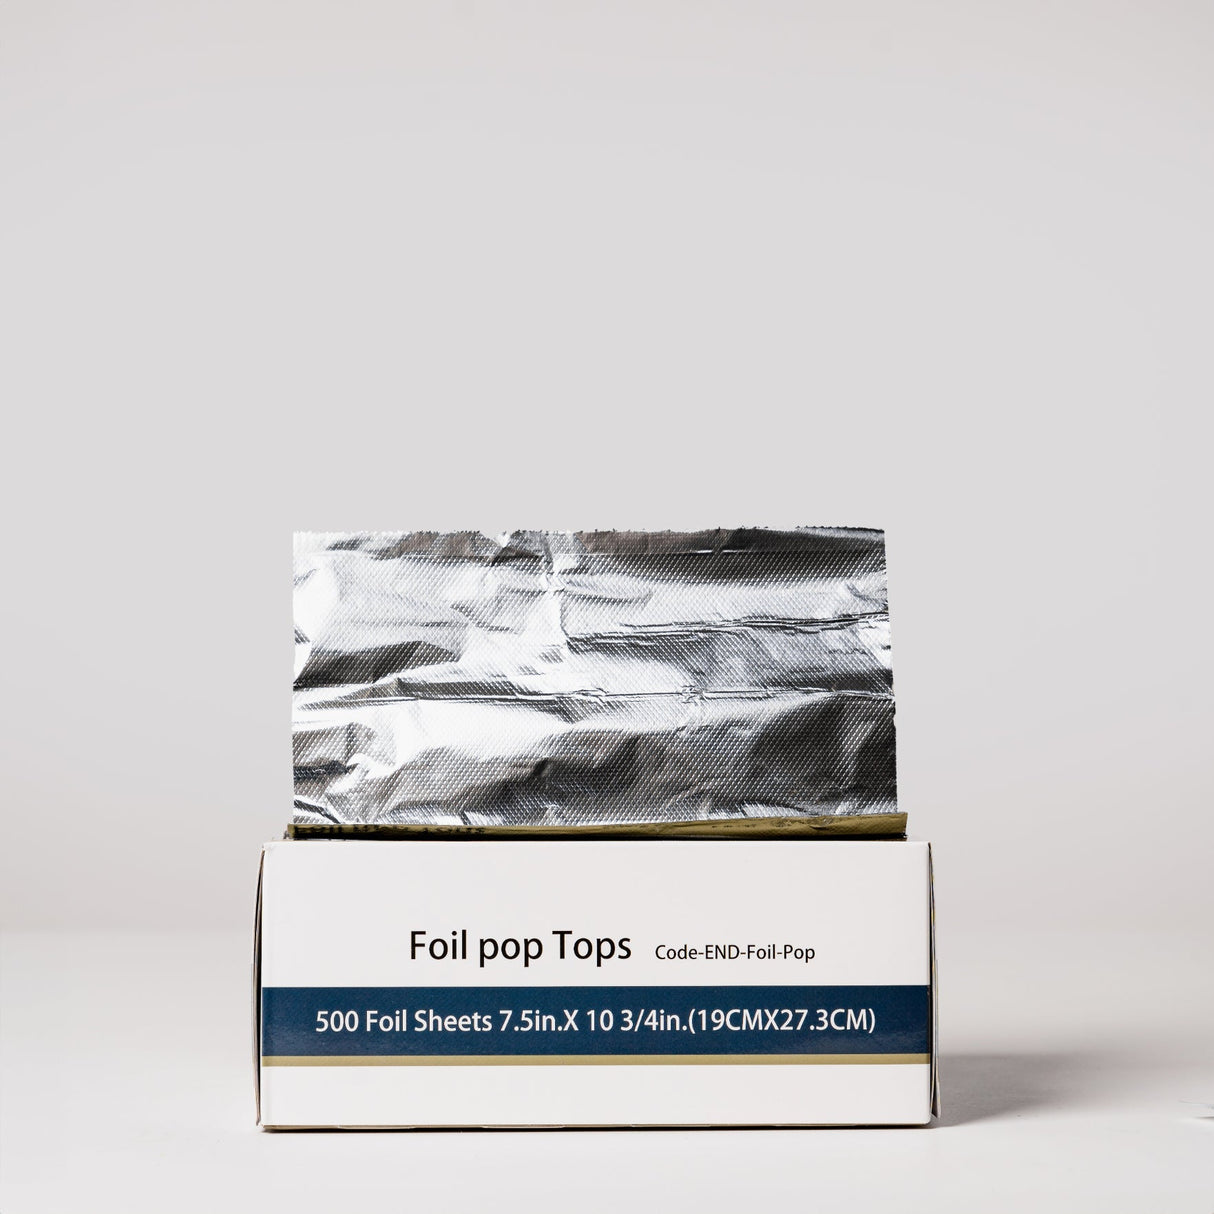 Box of Foil Pop Sheets 19.5cm x 27.3cm